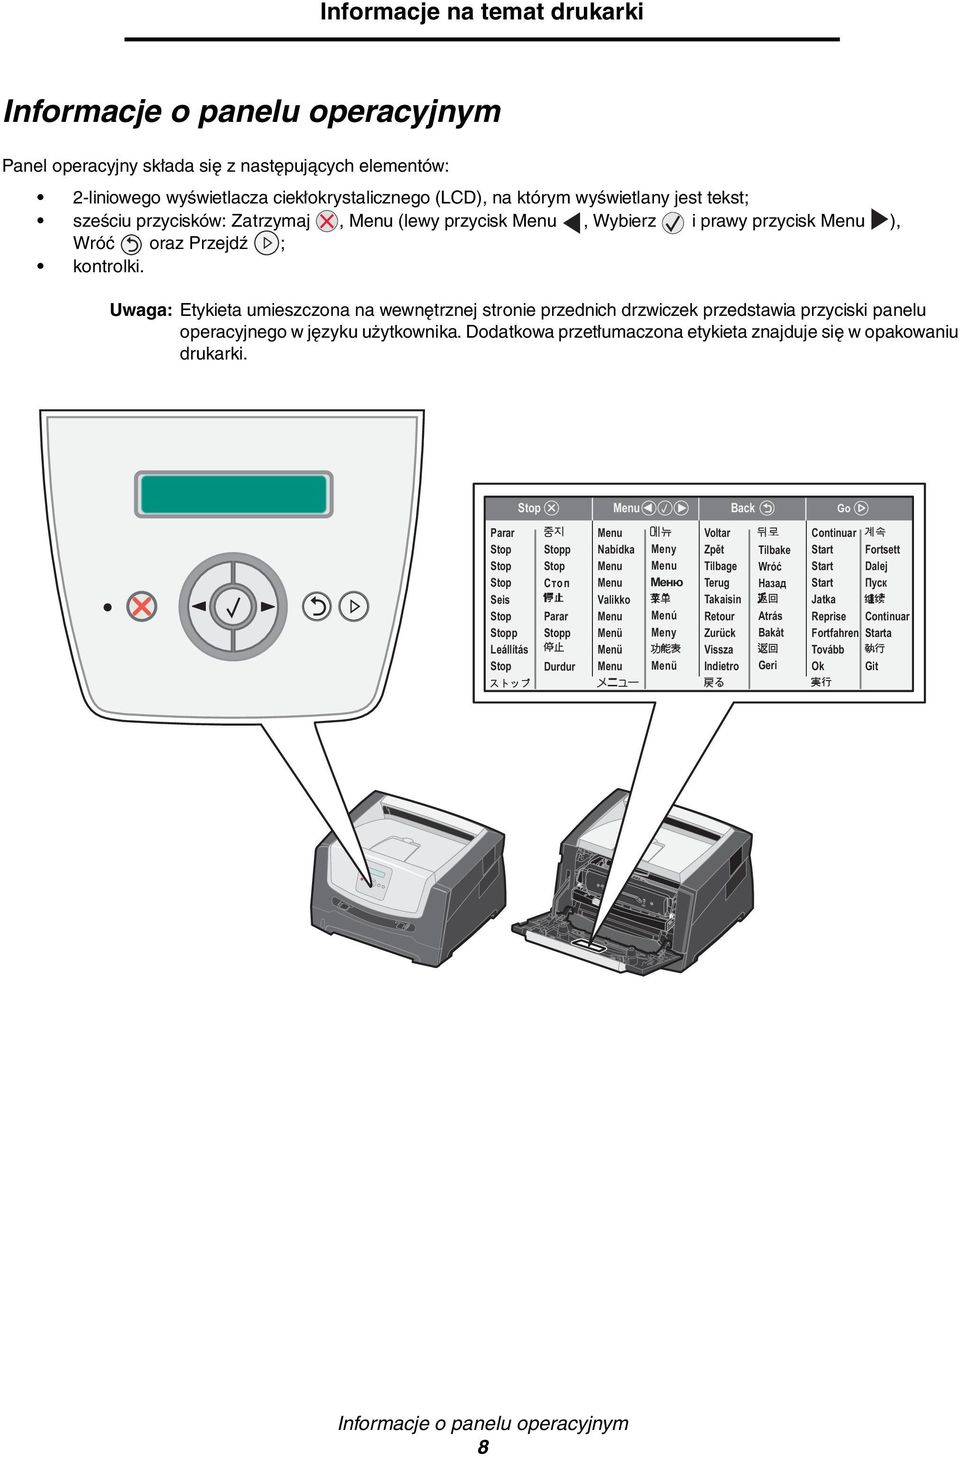 Uwaga: Etykieta umieszczona na wewnętrznej stronie przednich drzwiczek przedstawia przyciski panelu operacyjnego w języku użytkownika.